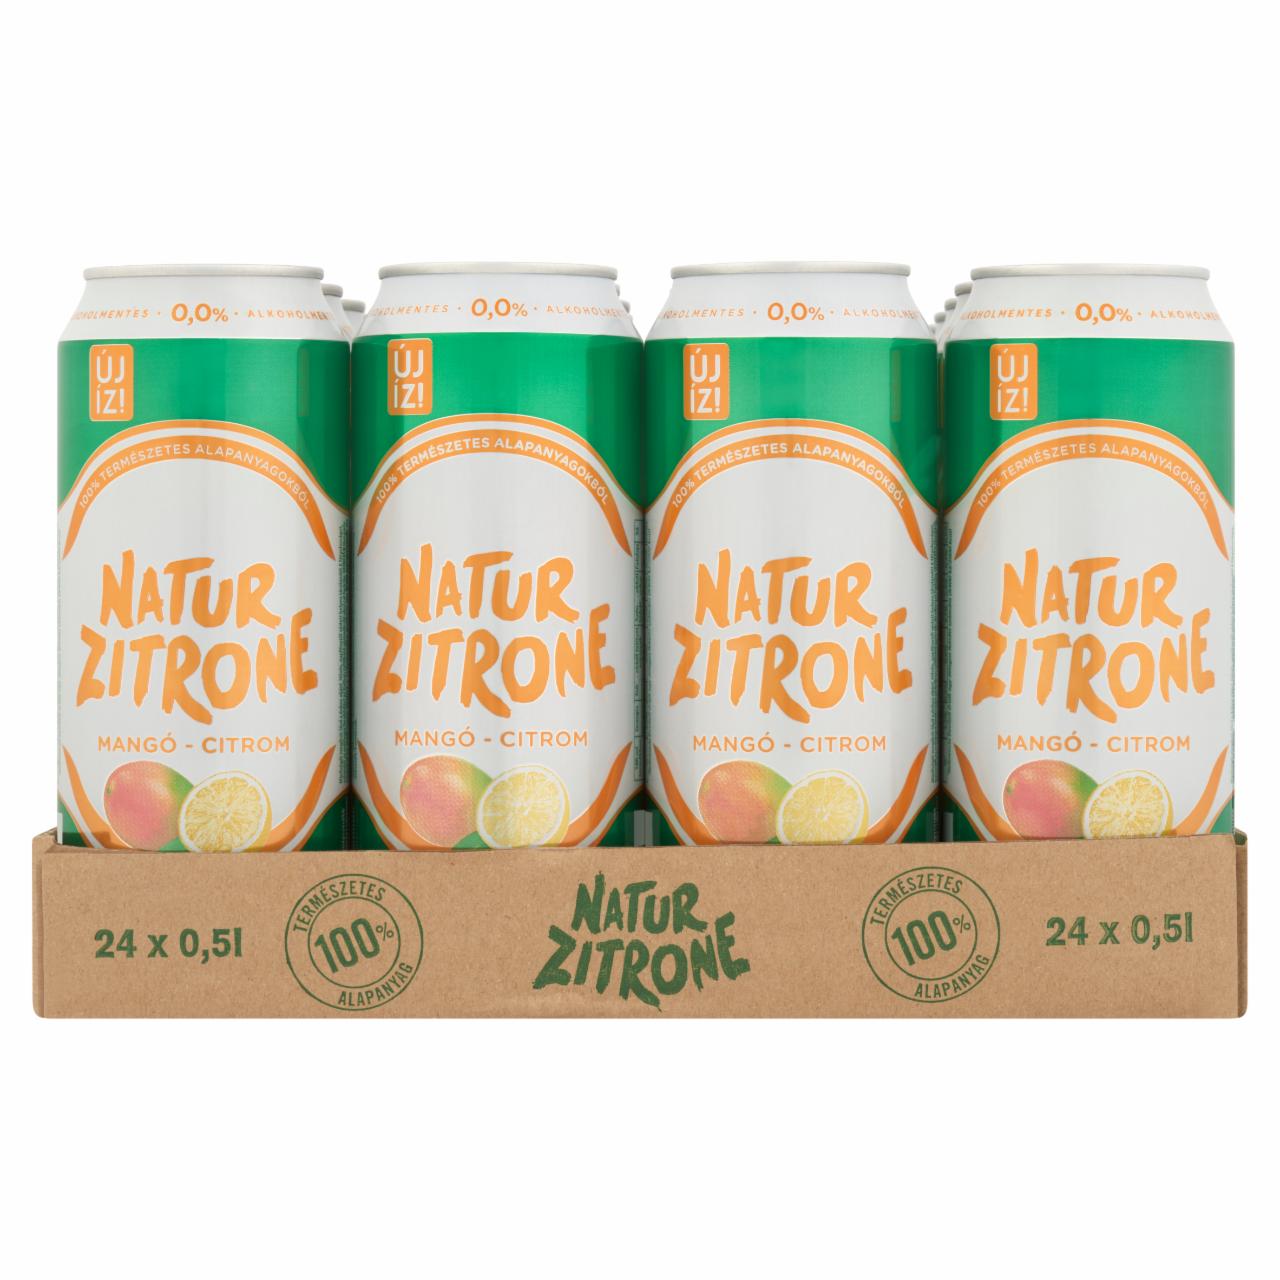 Képek - Natur Zitrone alkoholmentes, mangó-citrom ízű szénsavas ital 24 x 0,5 l tálca